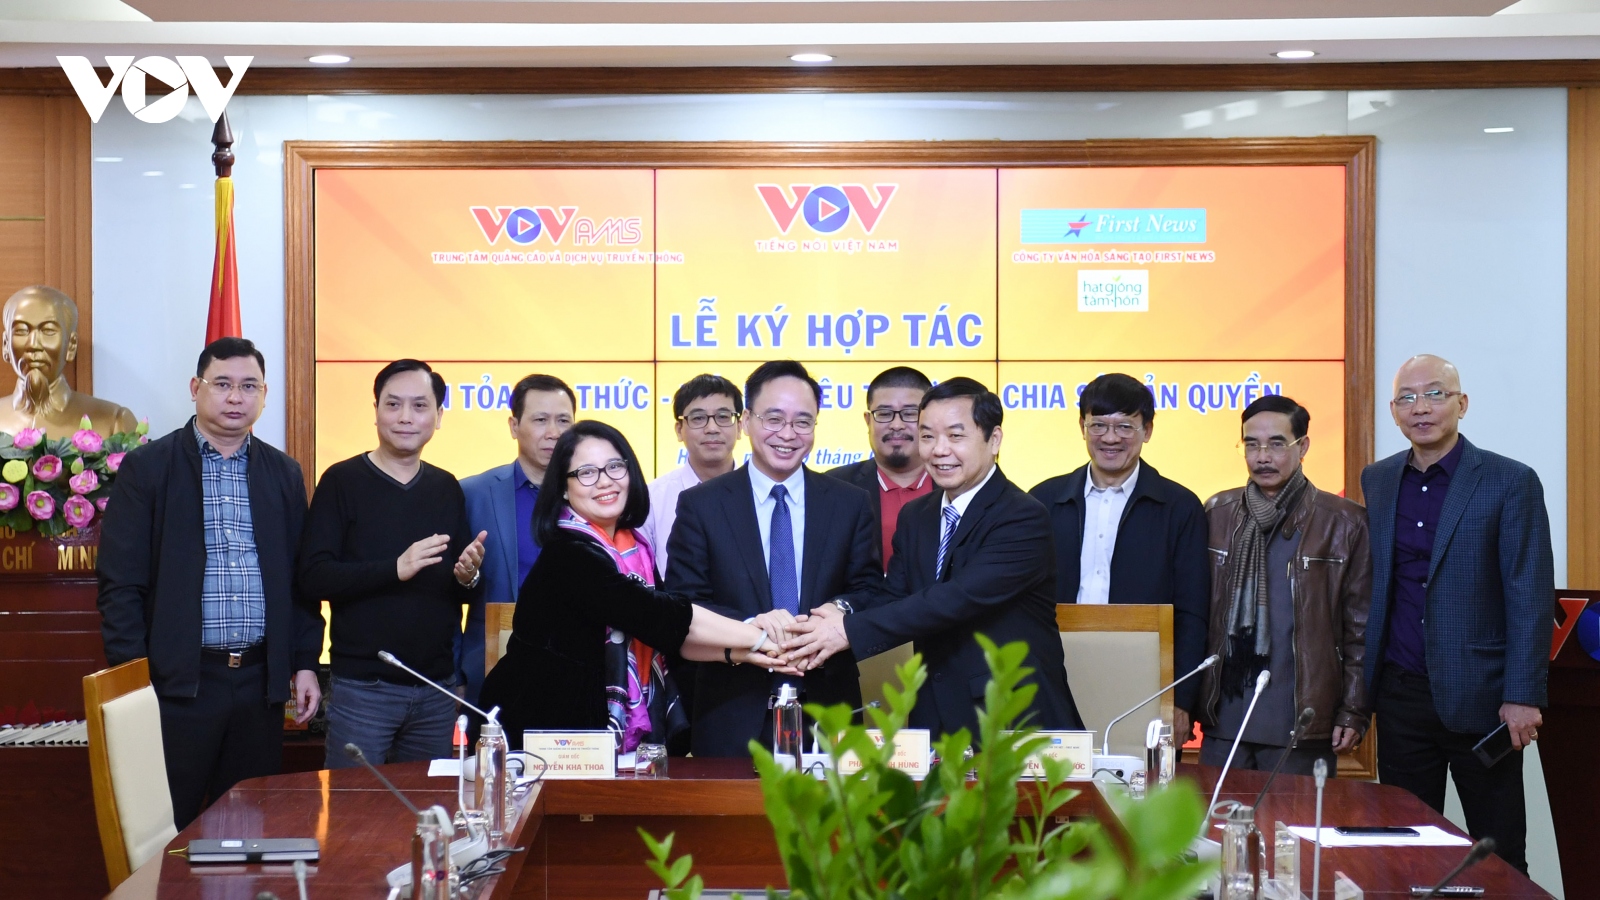 VOV và First News - Trí Việt hợp tác chia sẻ bản quyền, lan toả tri thức